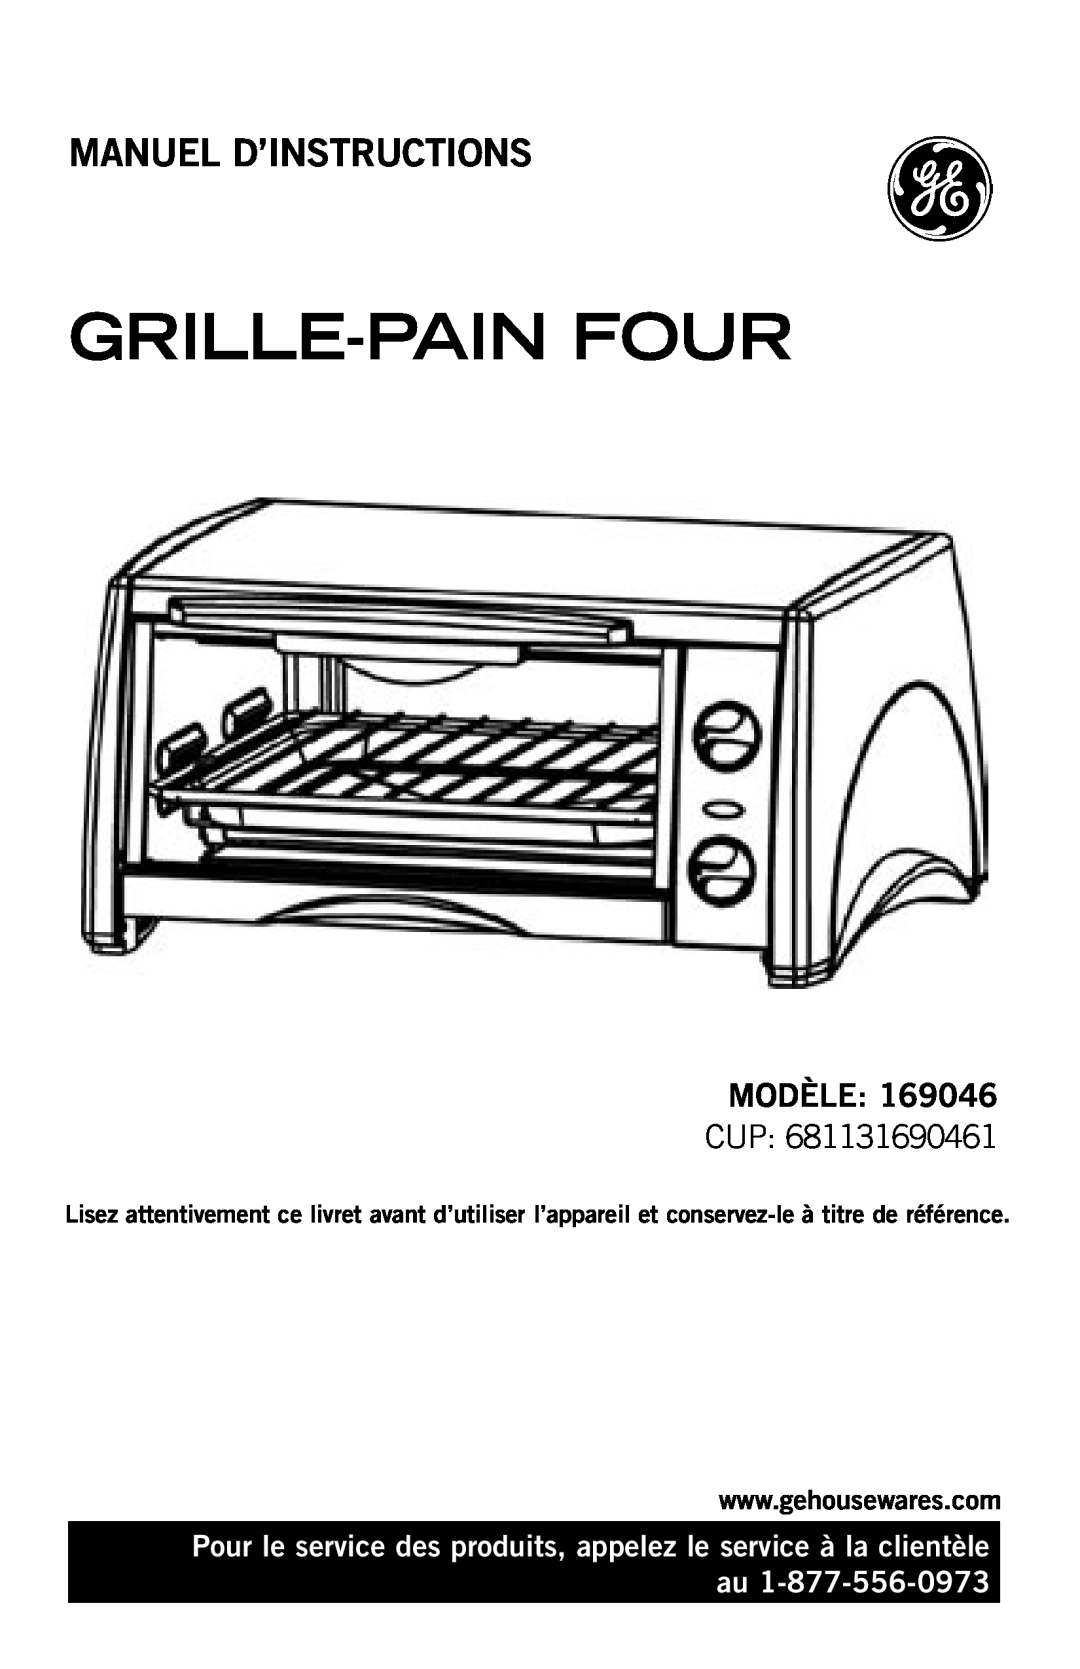 GE 4681131690461 manual Grille-Painfour, Manuel D’Instructions, Modèle, Cup 